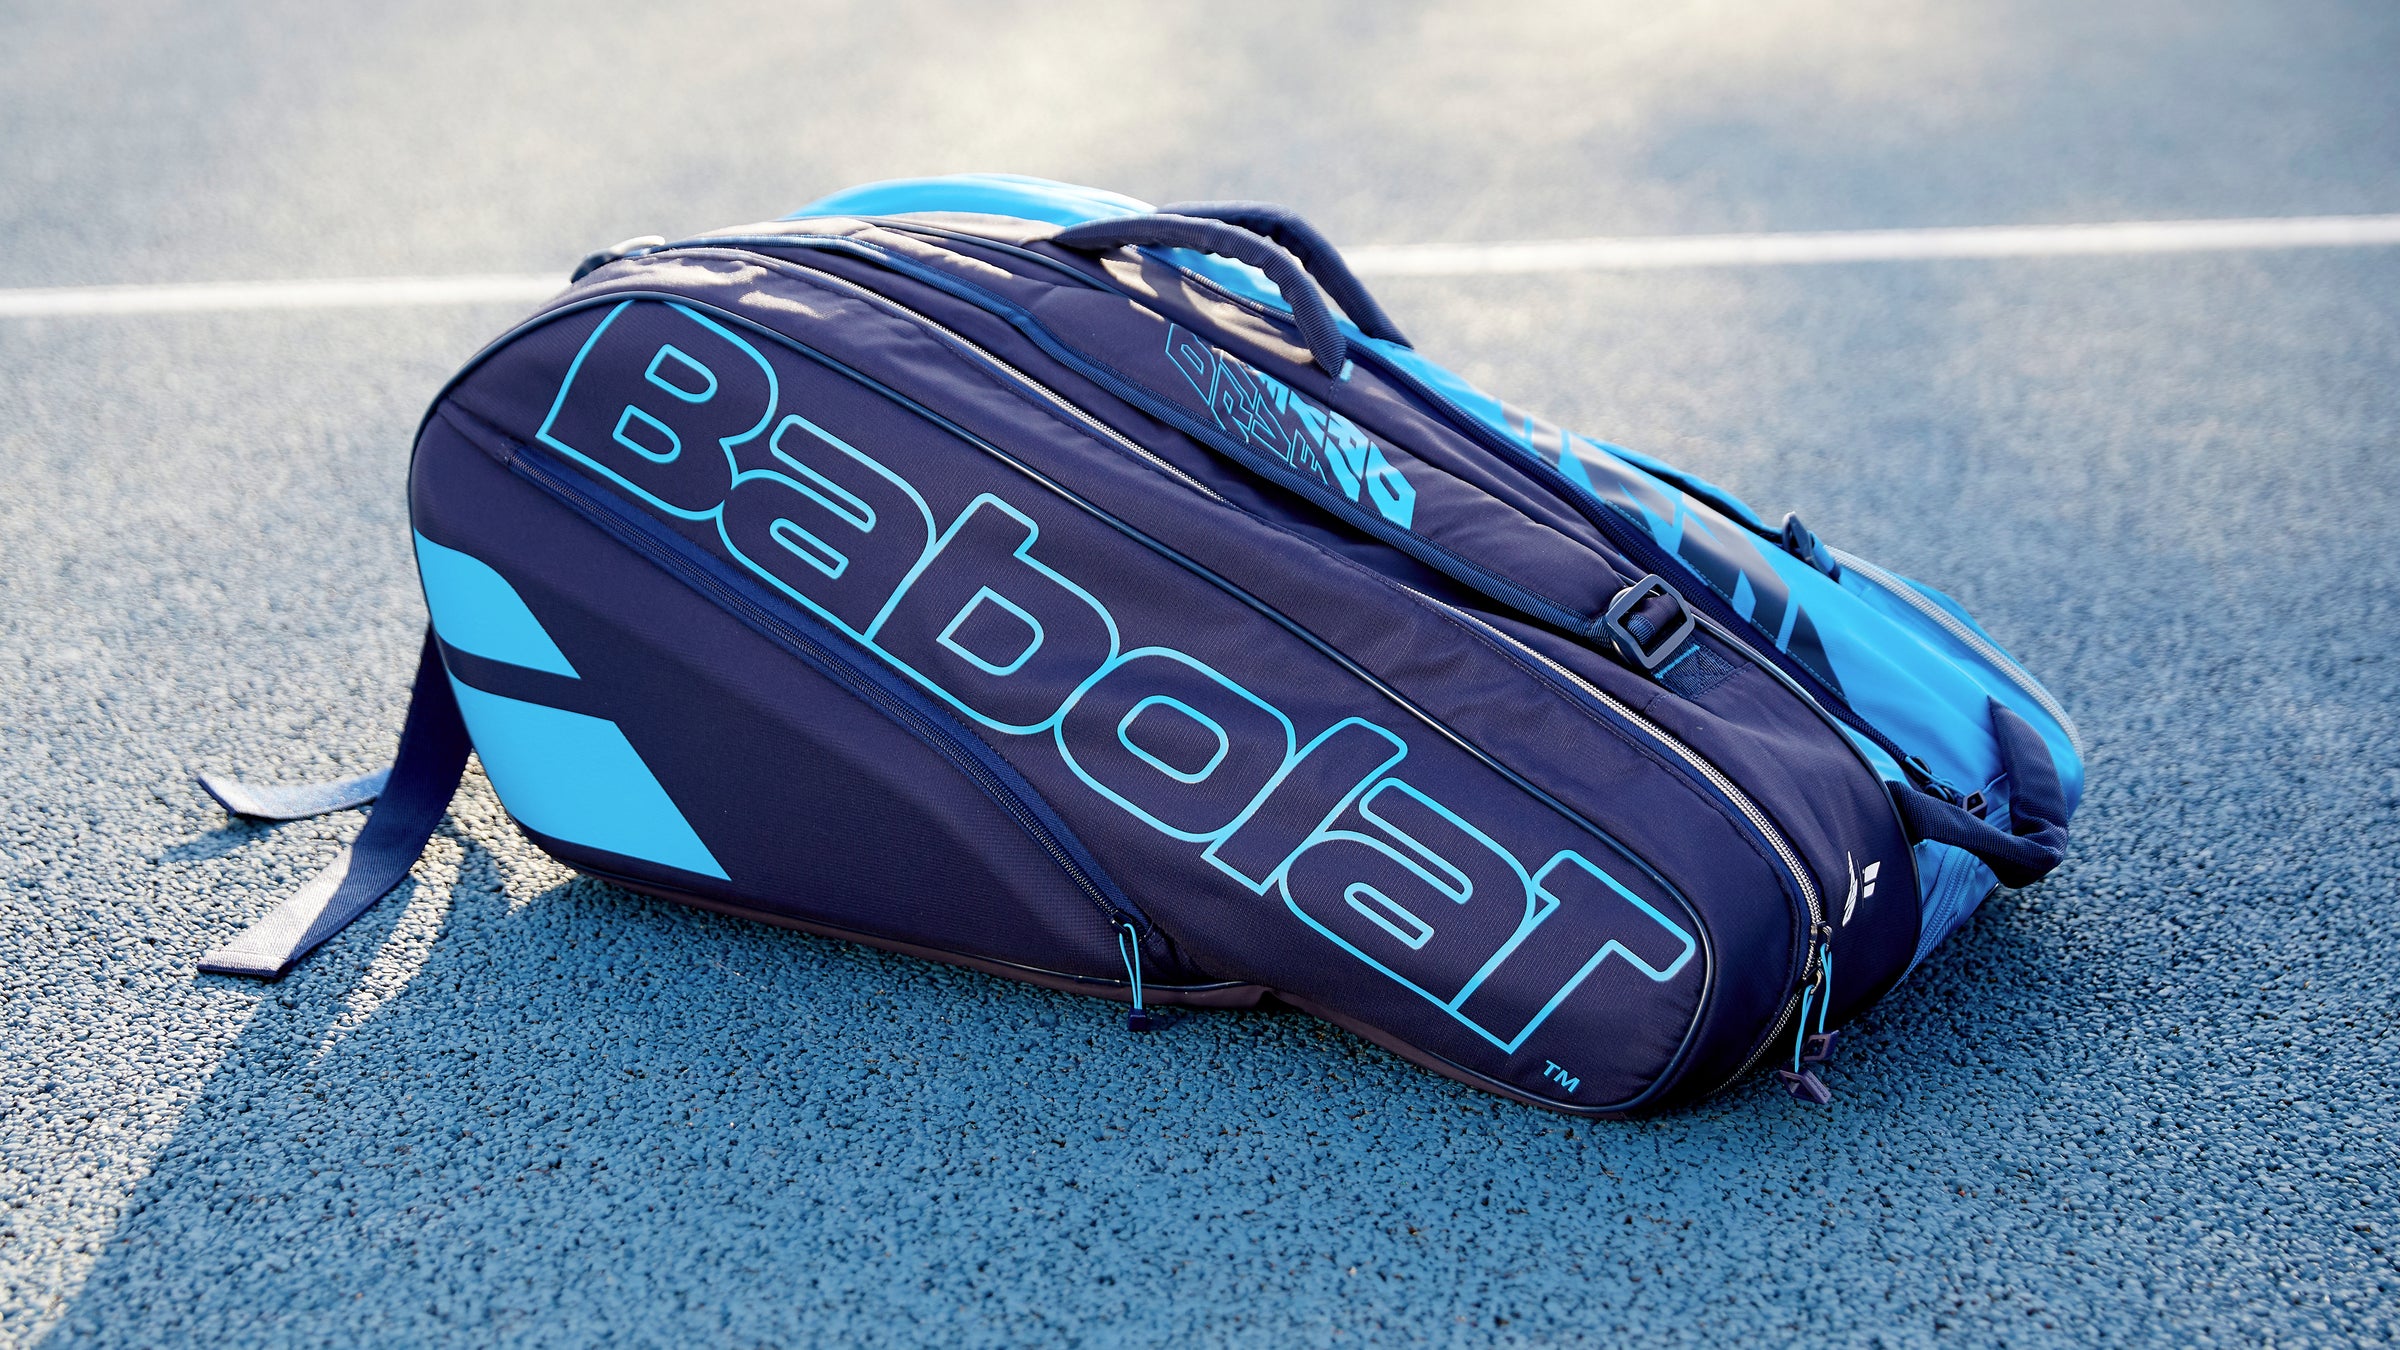 Babolat tennis bags